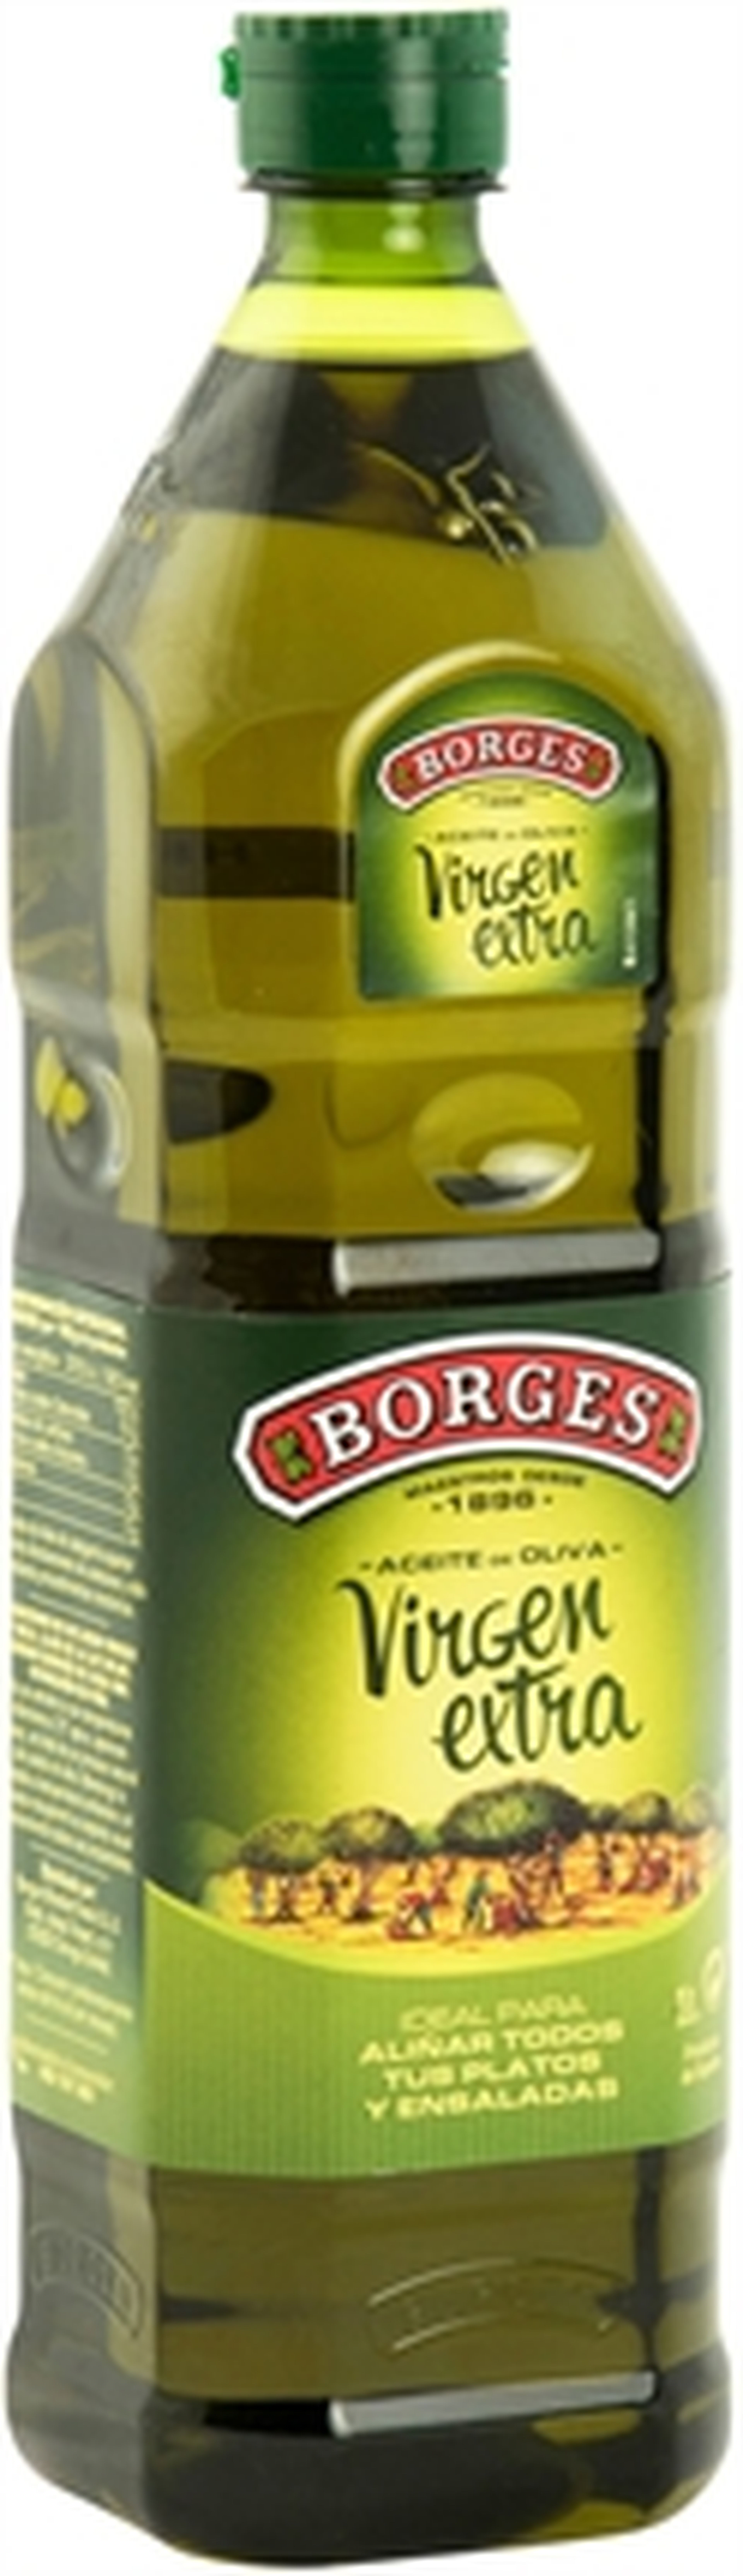 Los mejores aceites de oliva virgen extra de supermercado, según la OCU